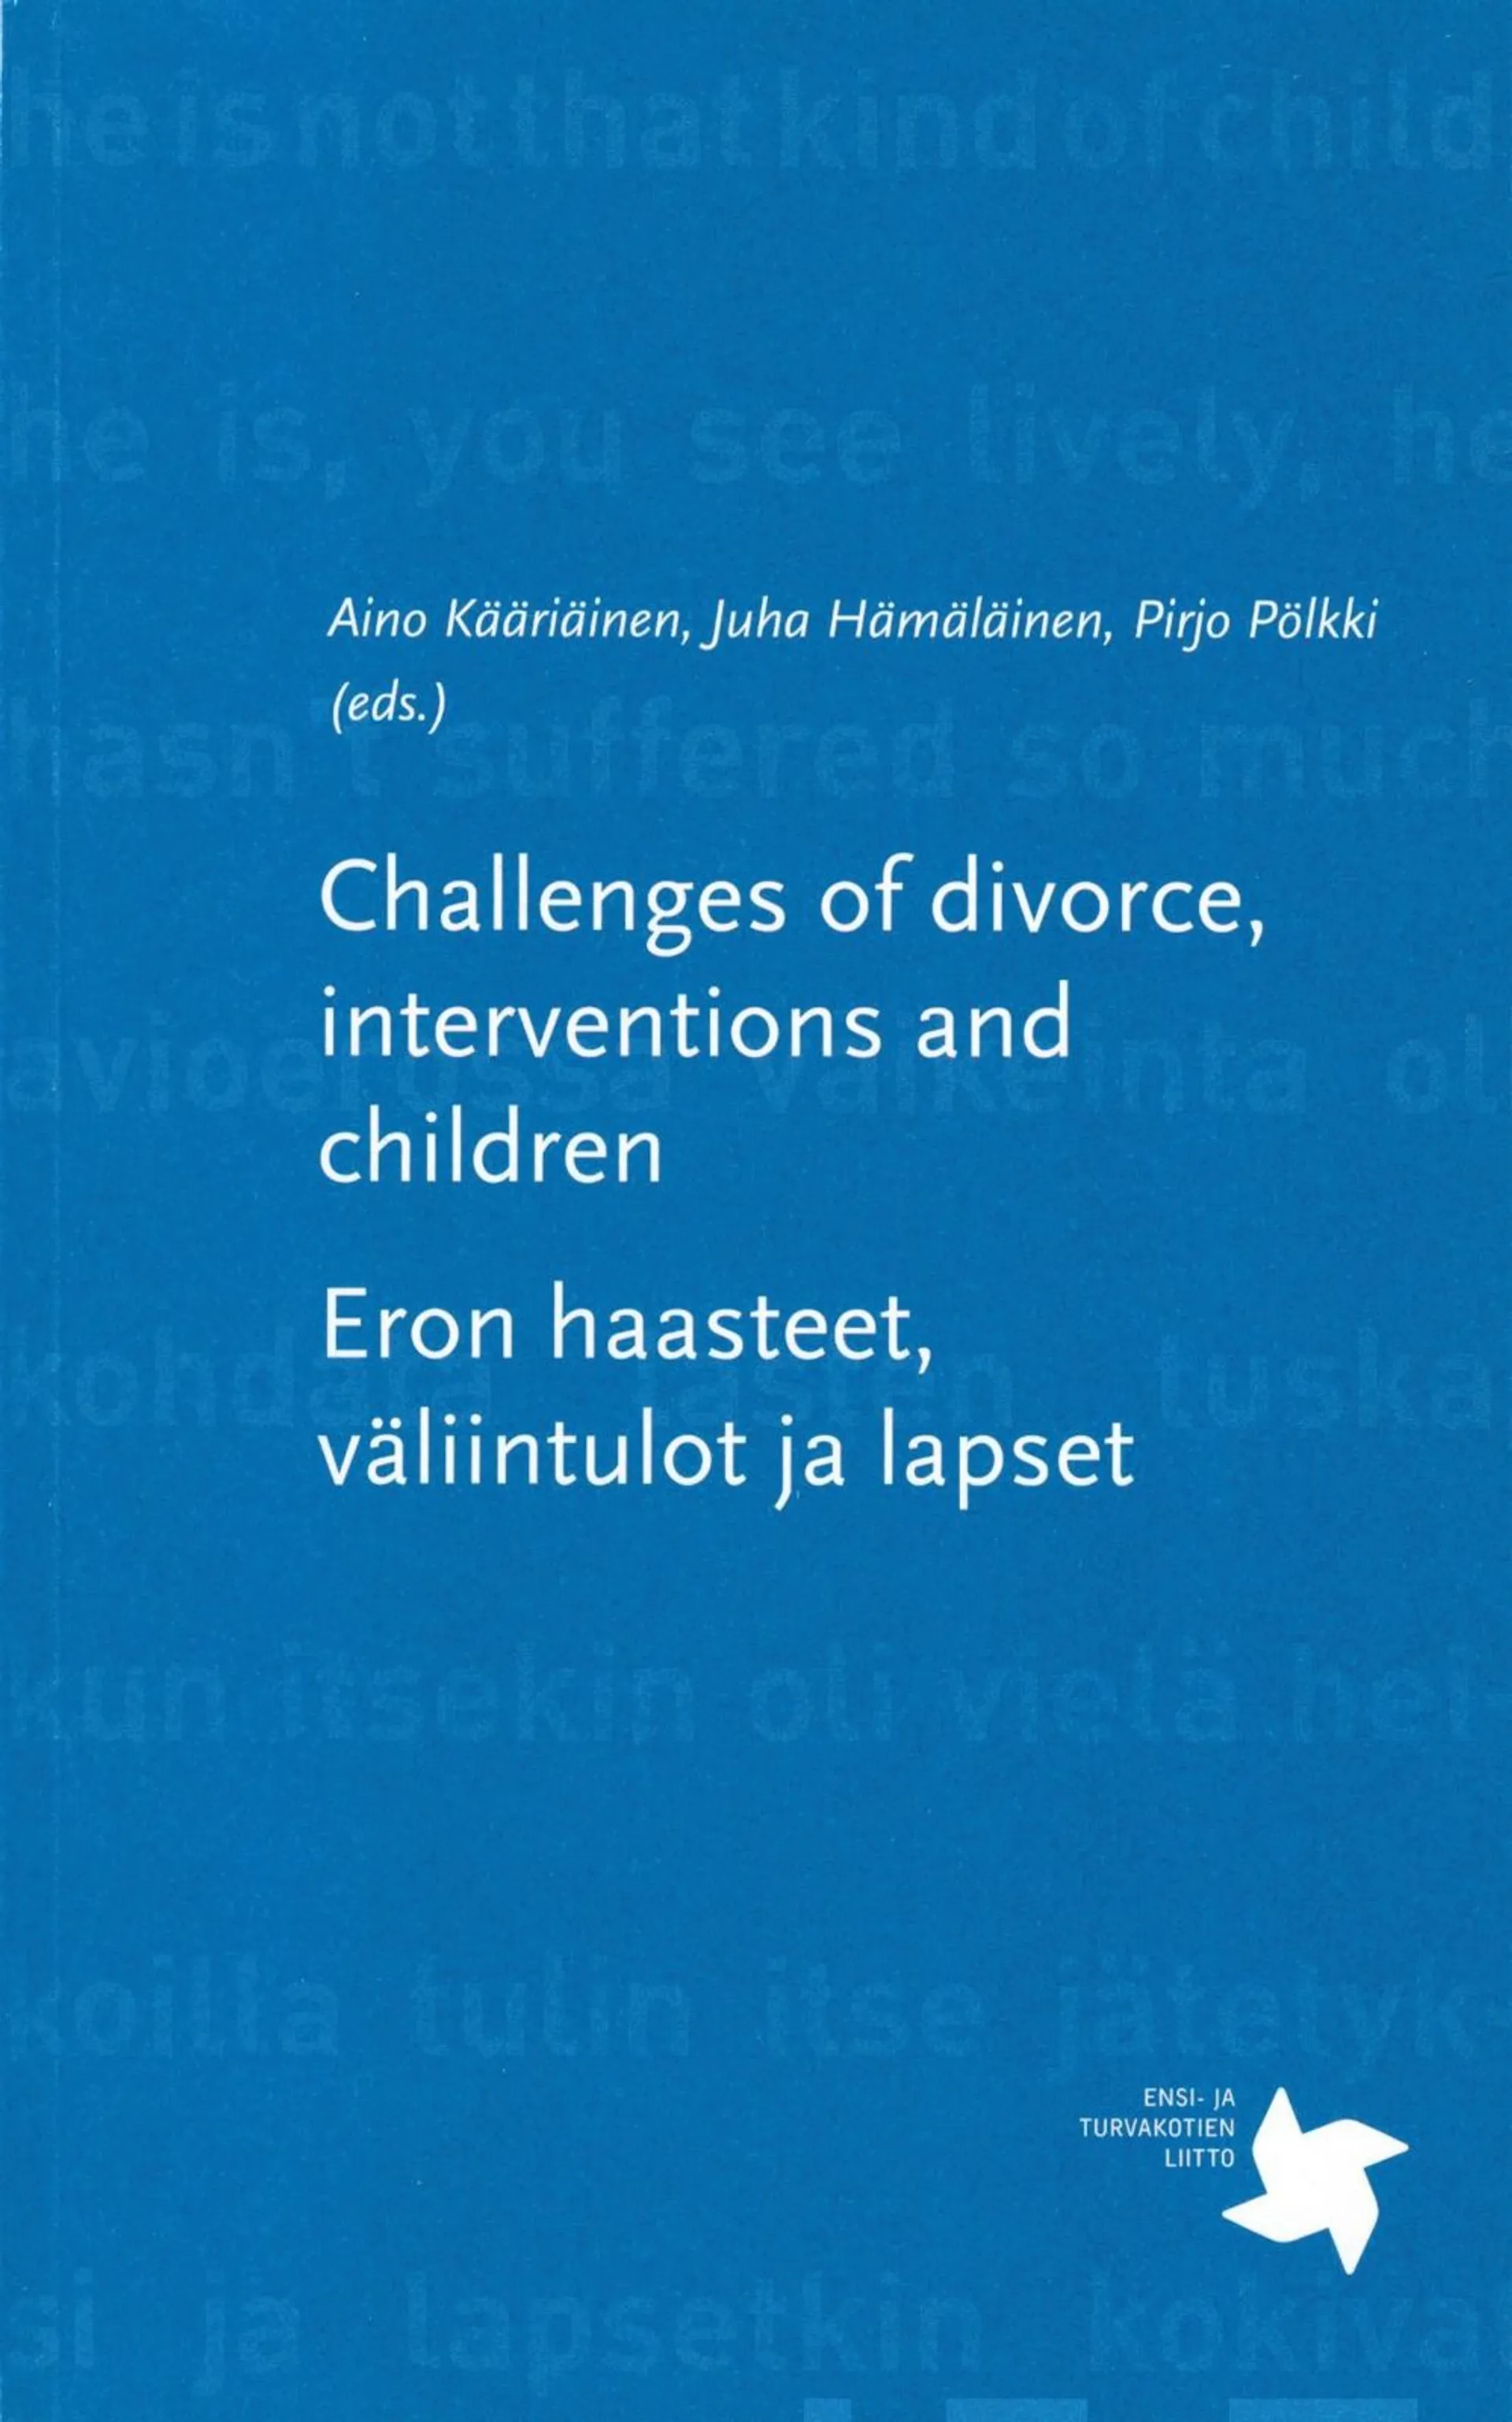 Challenges of divorce, interventions and children - Eron haasteet, väliintulot ja lapset